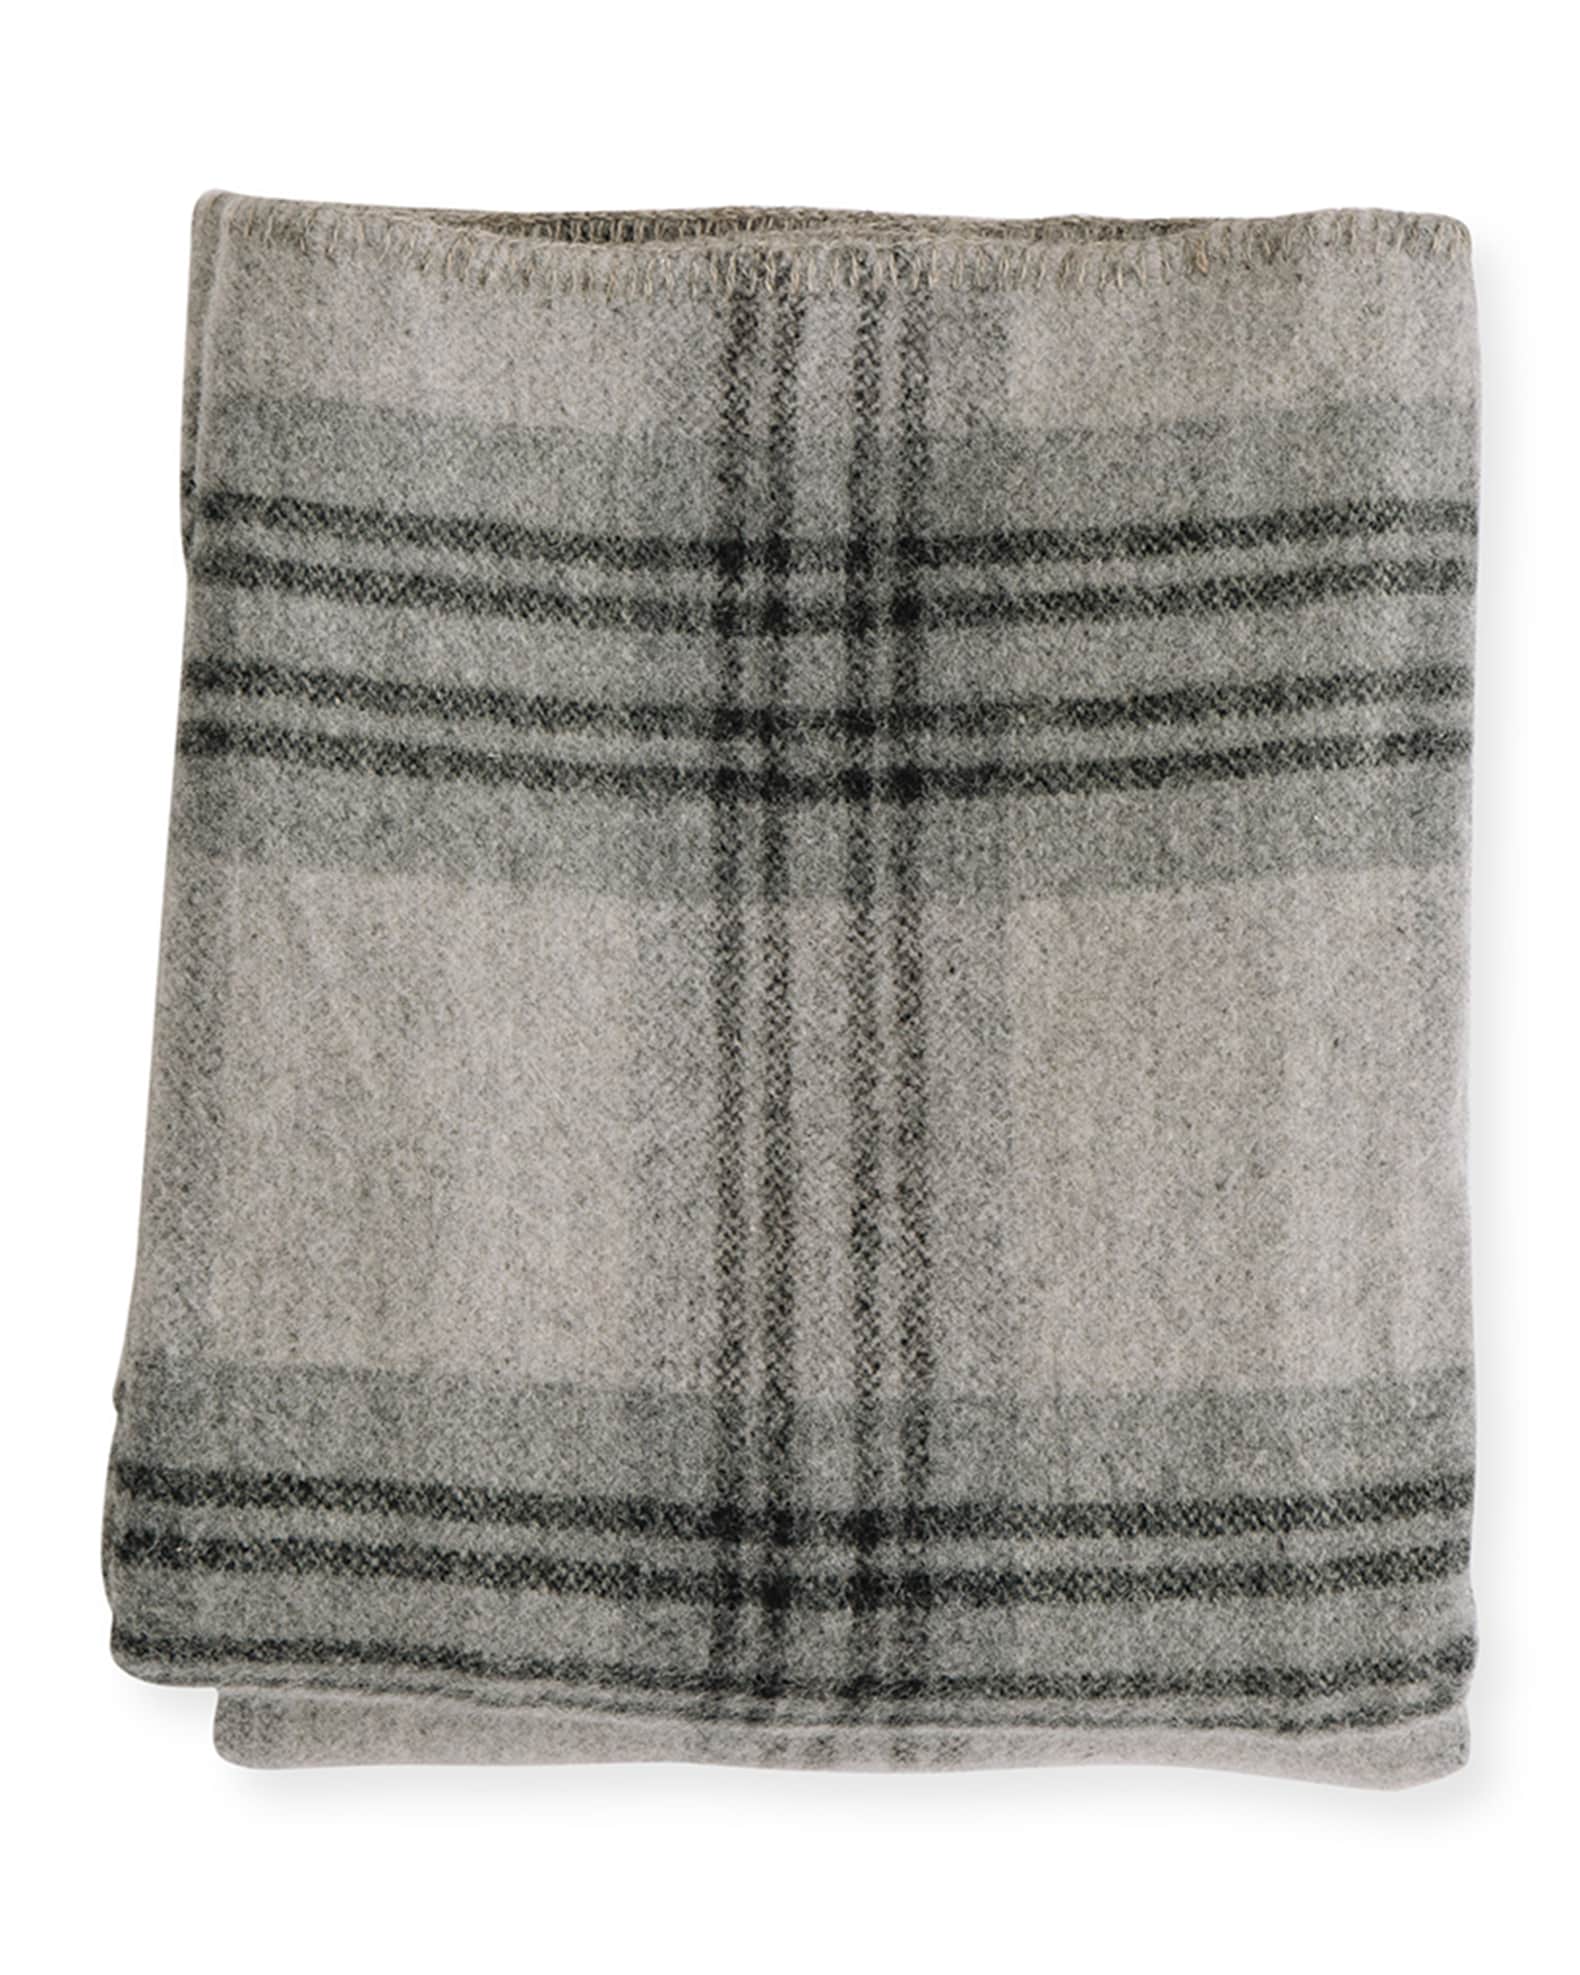 Evangeline Linens Plaid Merino Wool King Blanket, Fog/Ledge | Neiman Marcus